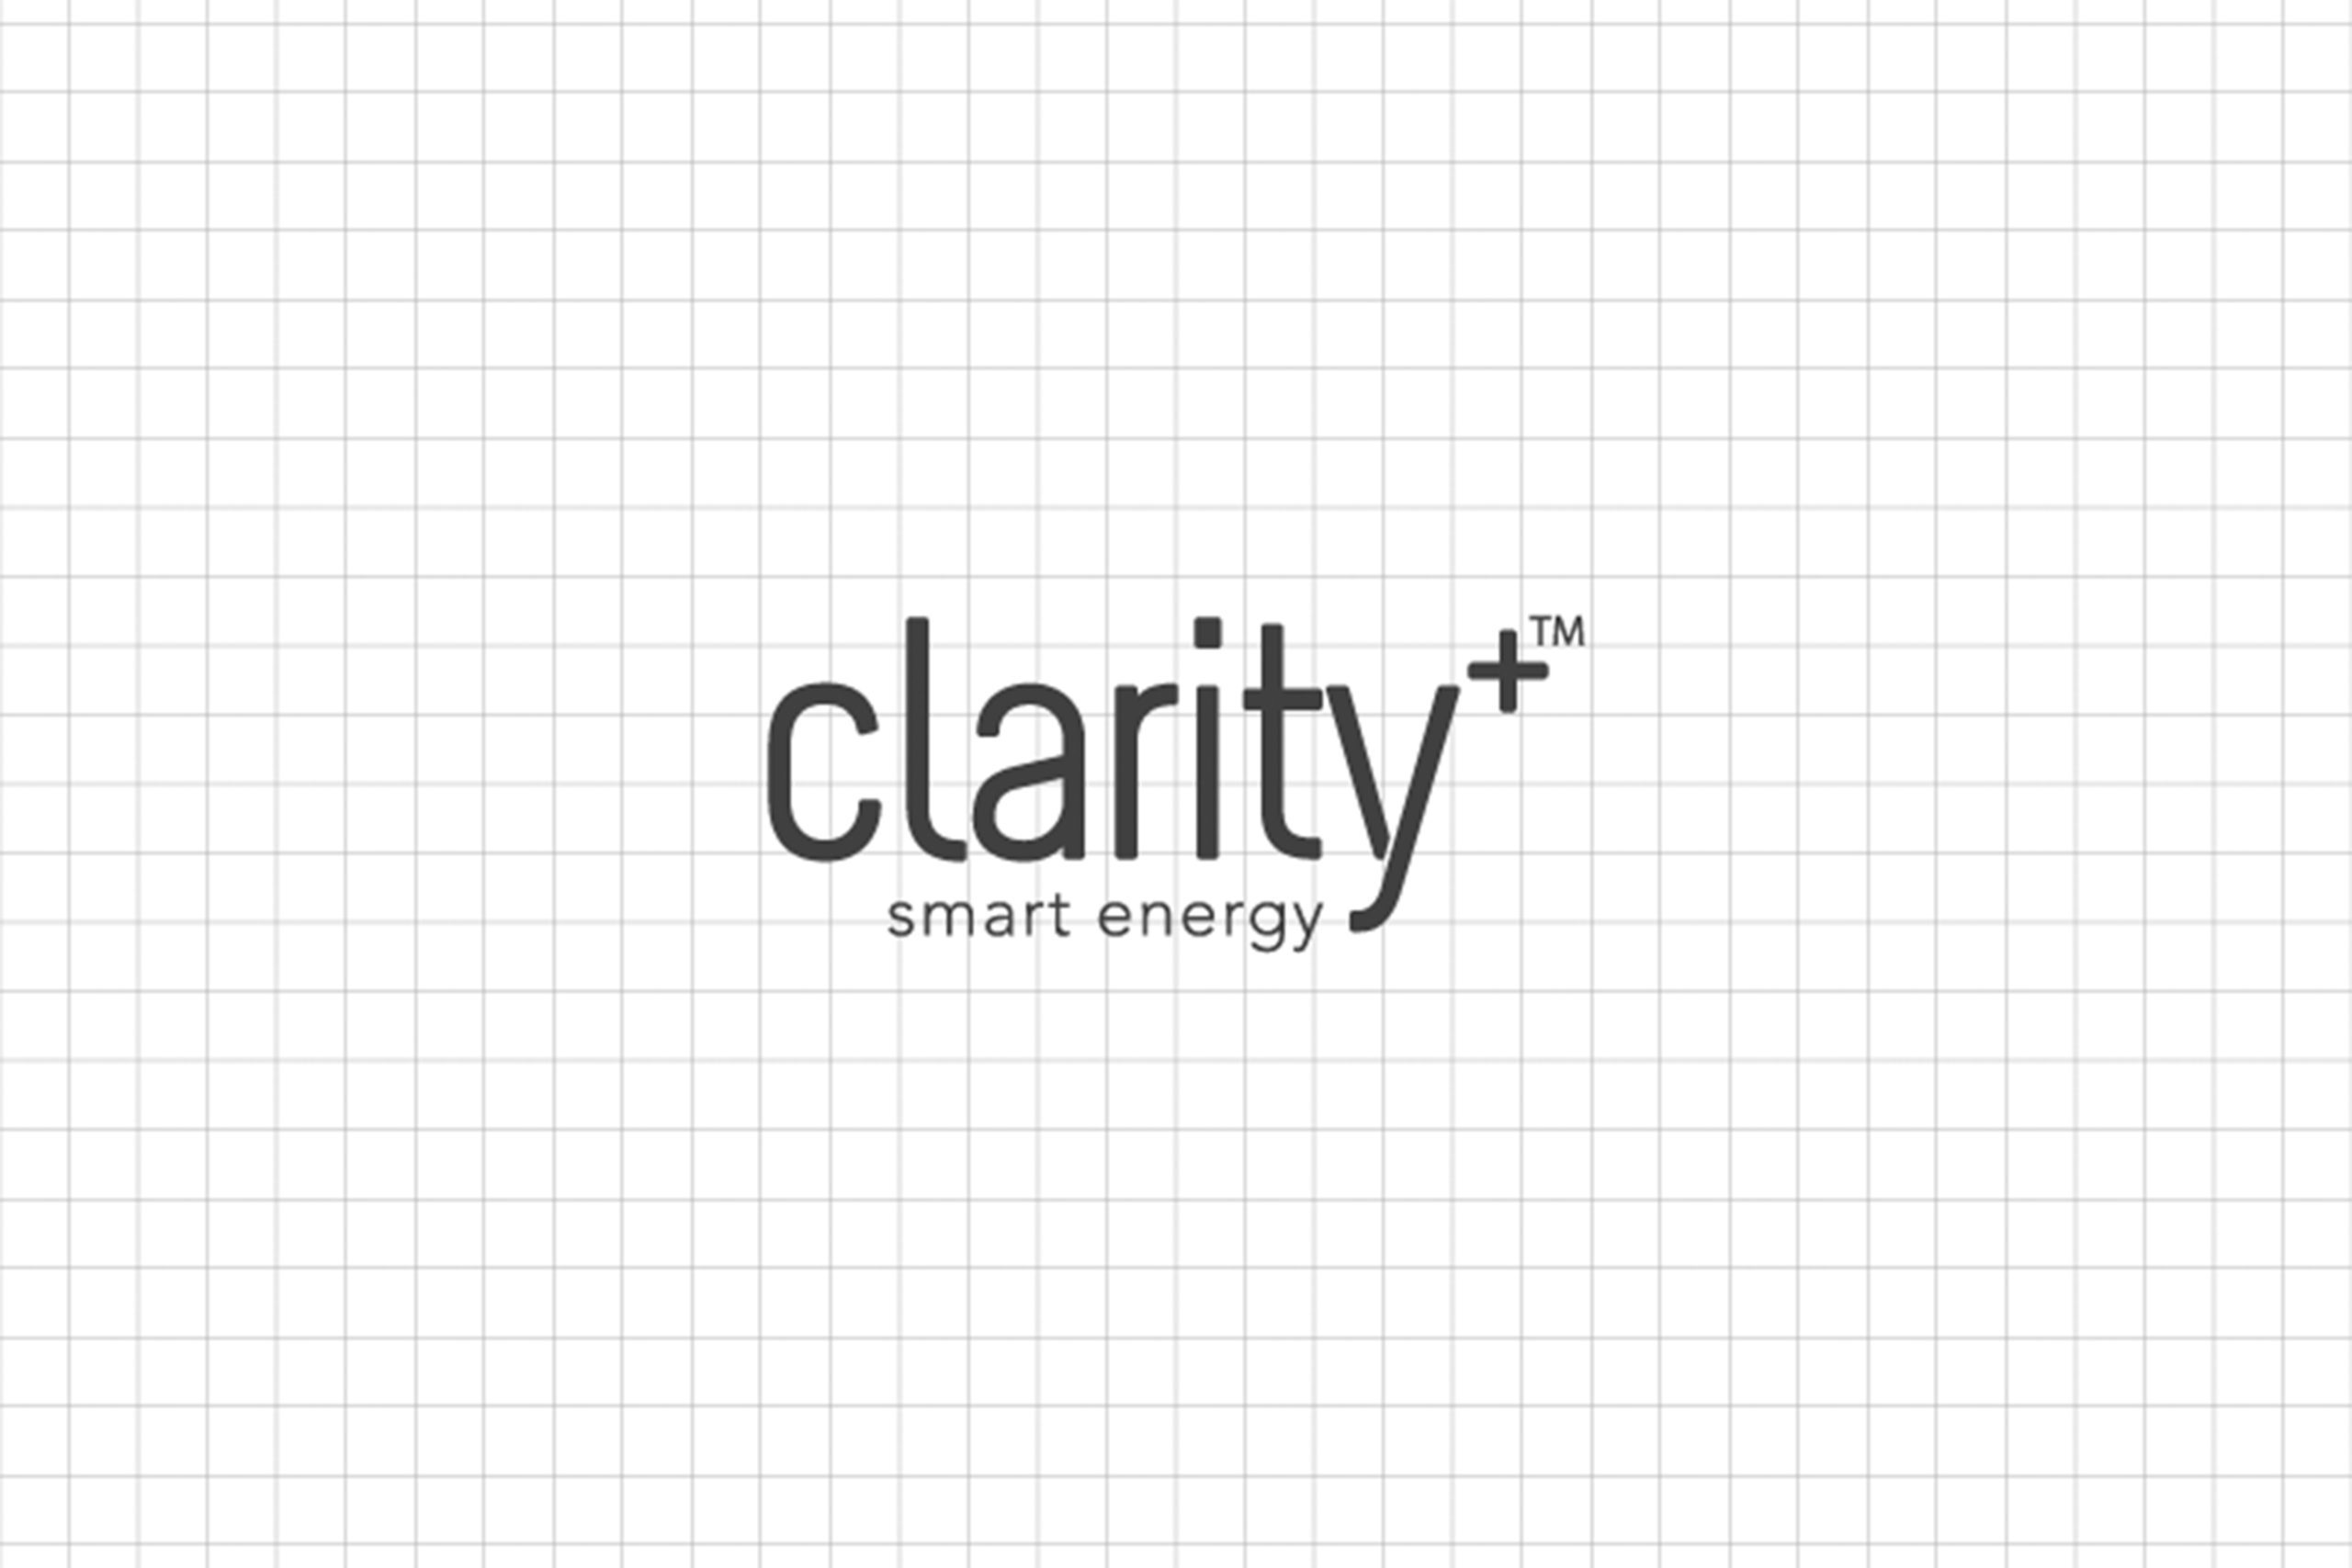 Black Clarity logo on grid